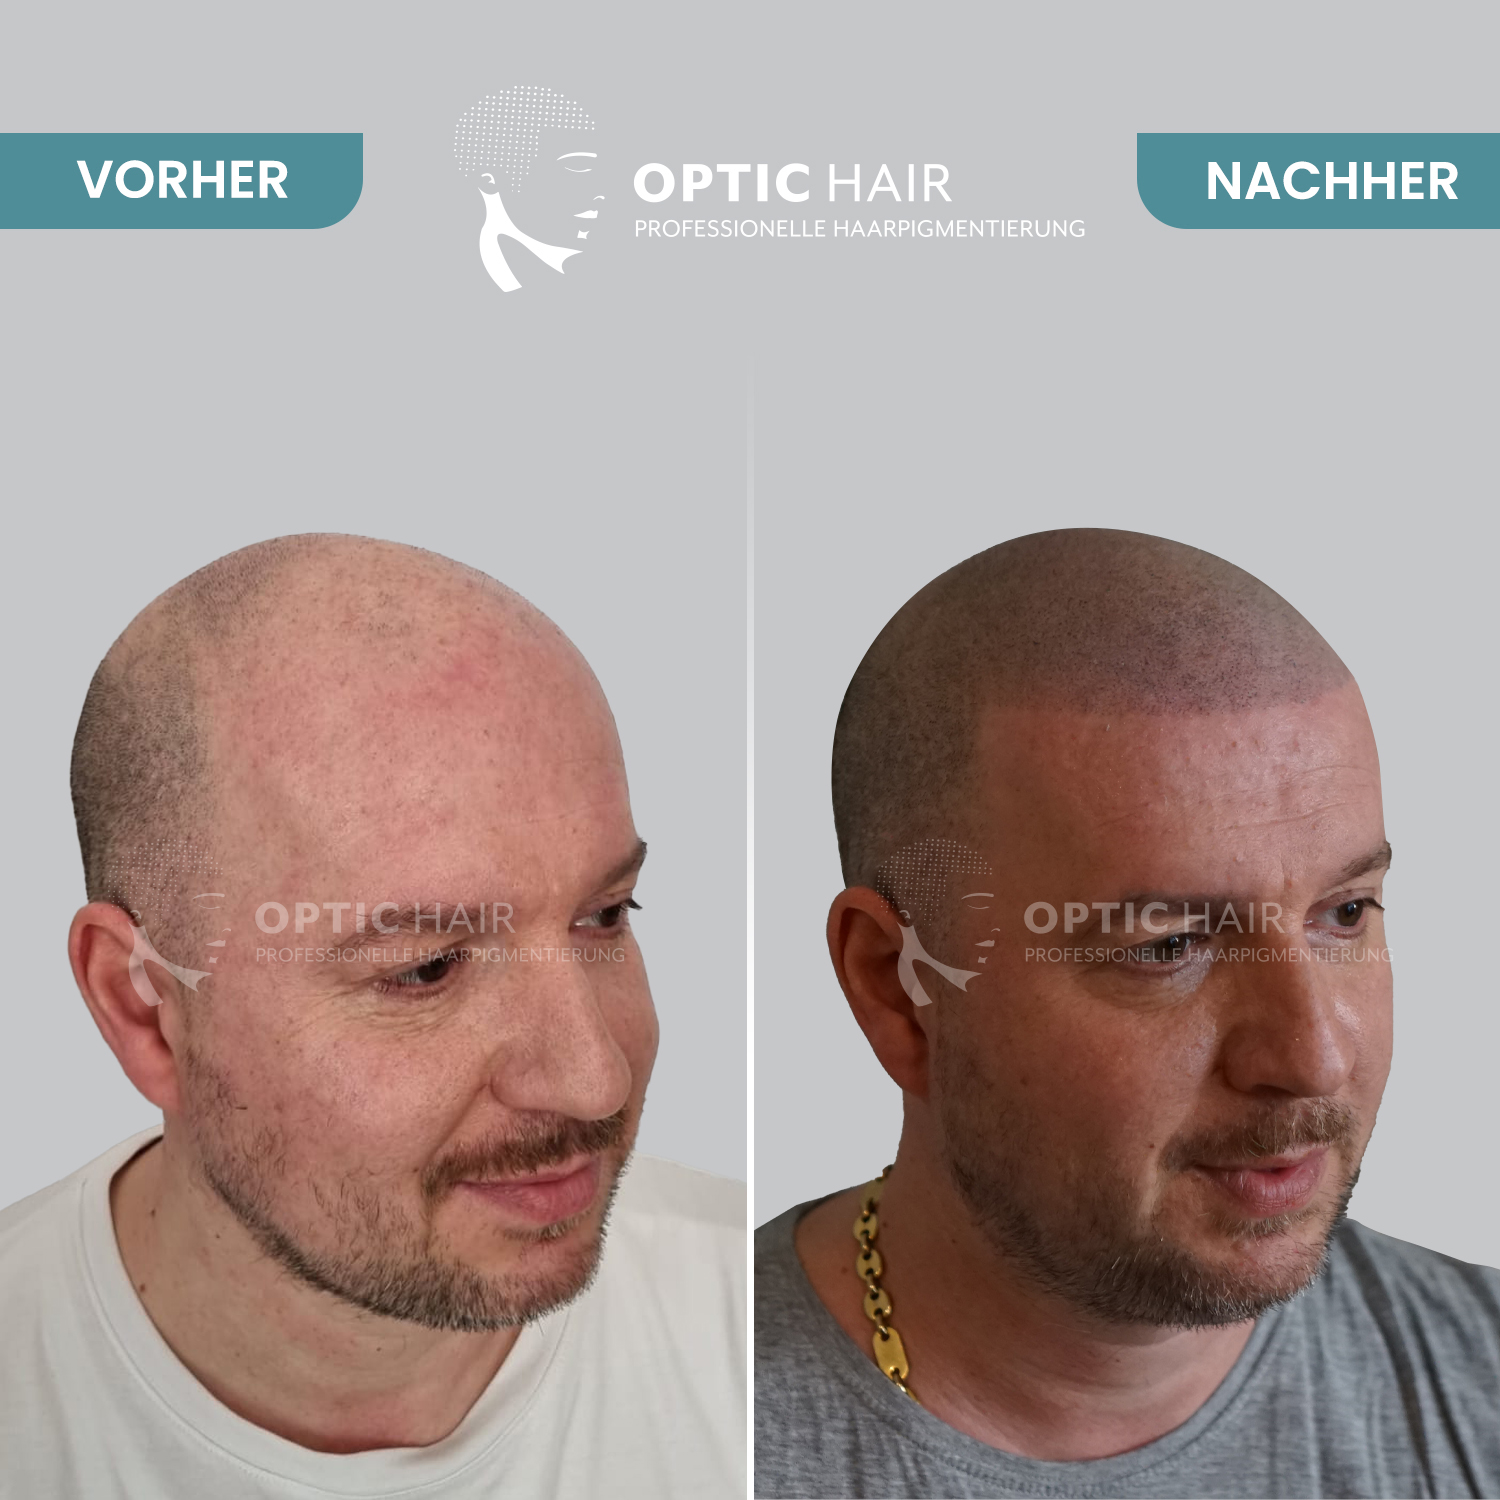 Haarpigmentierung Berlin | OpticHair, Silvio-Meier-Straße 2 in Berlin